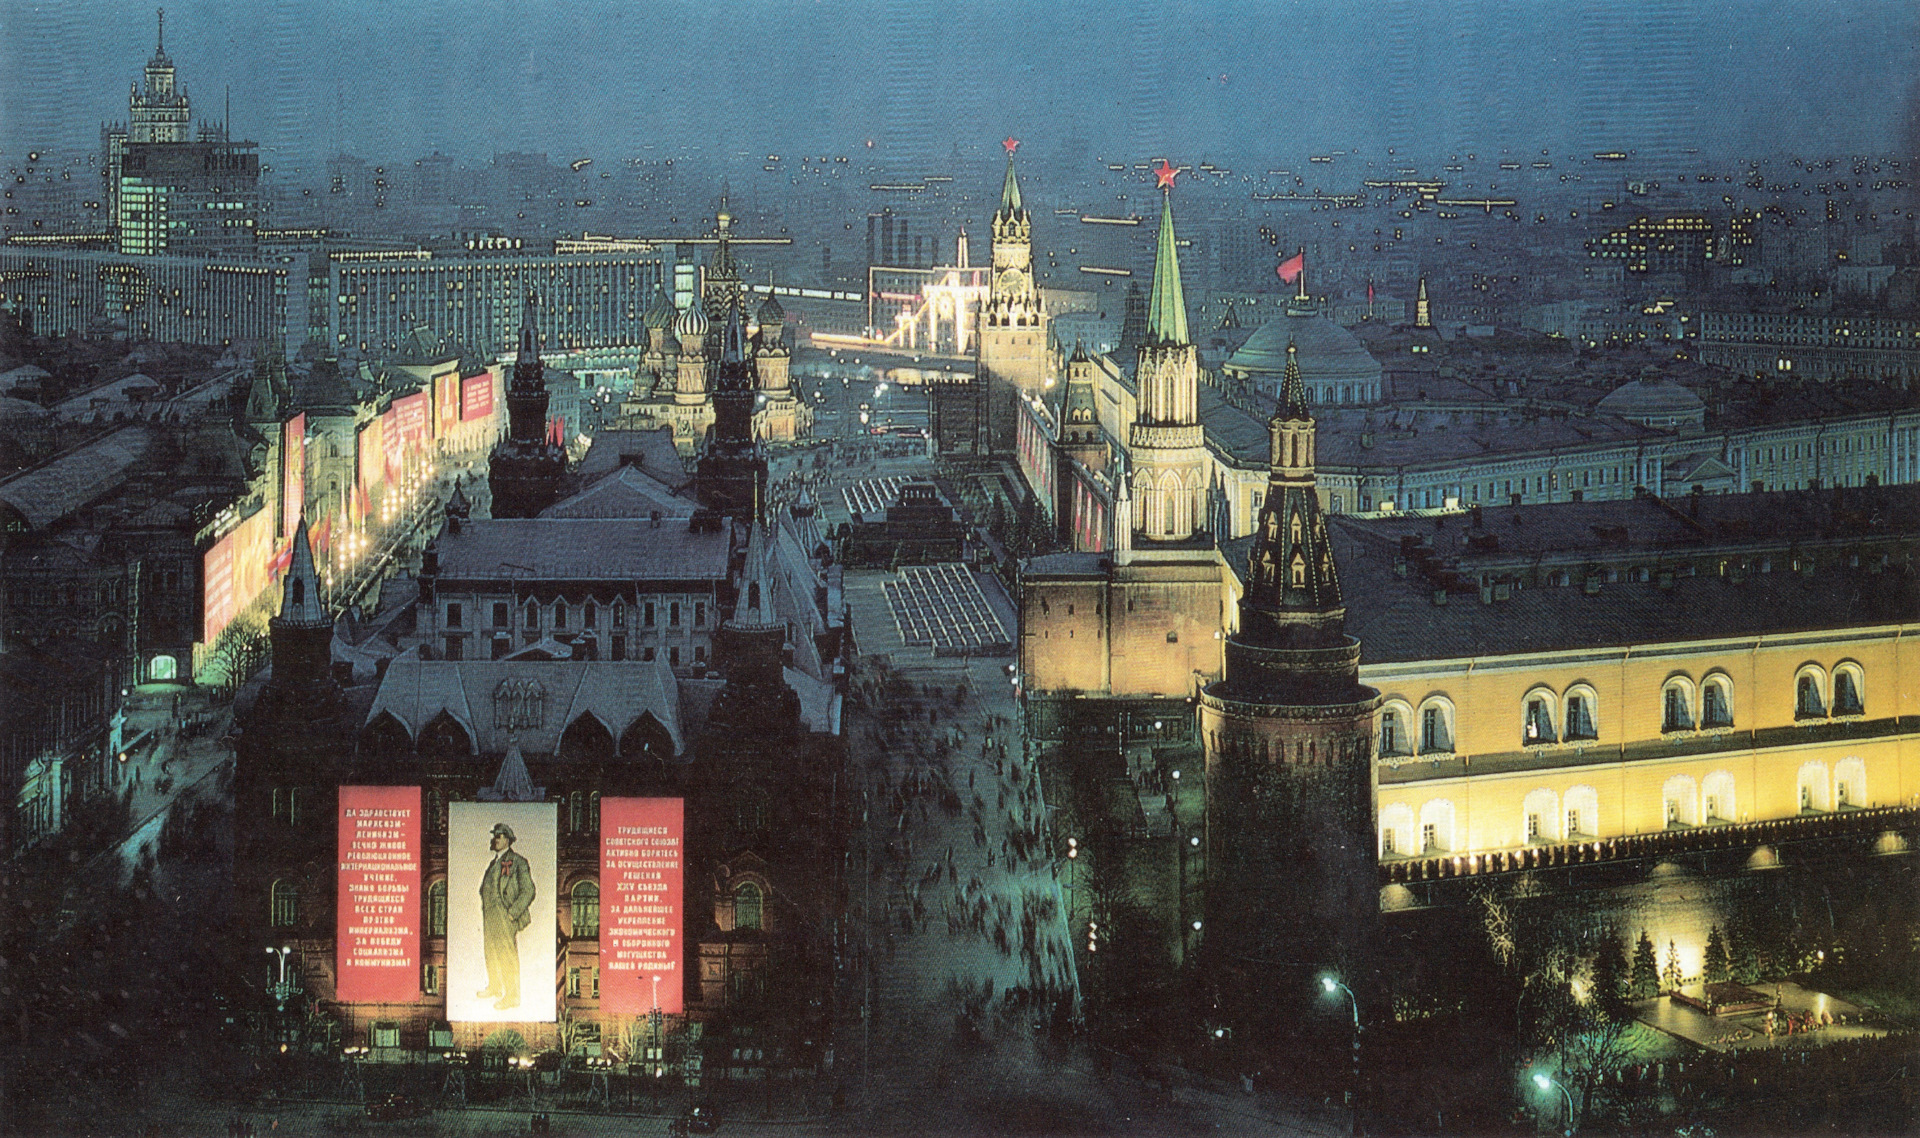 Москва стала столицей ссср в году